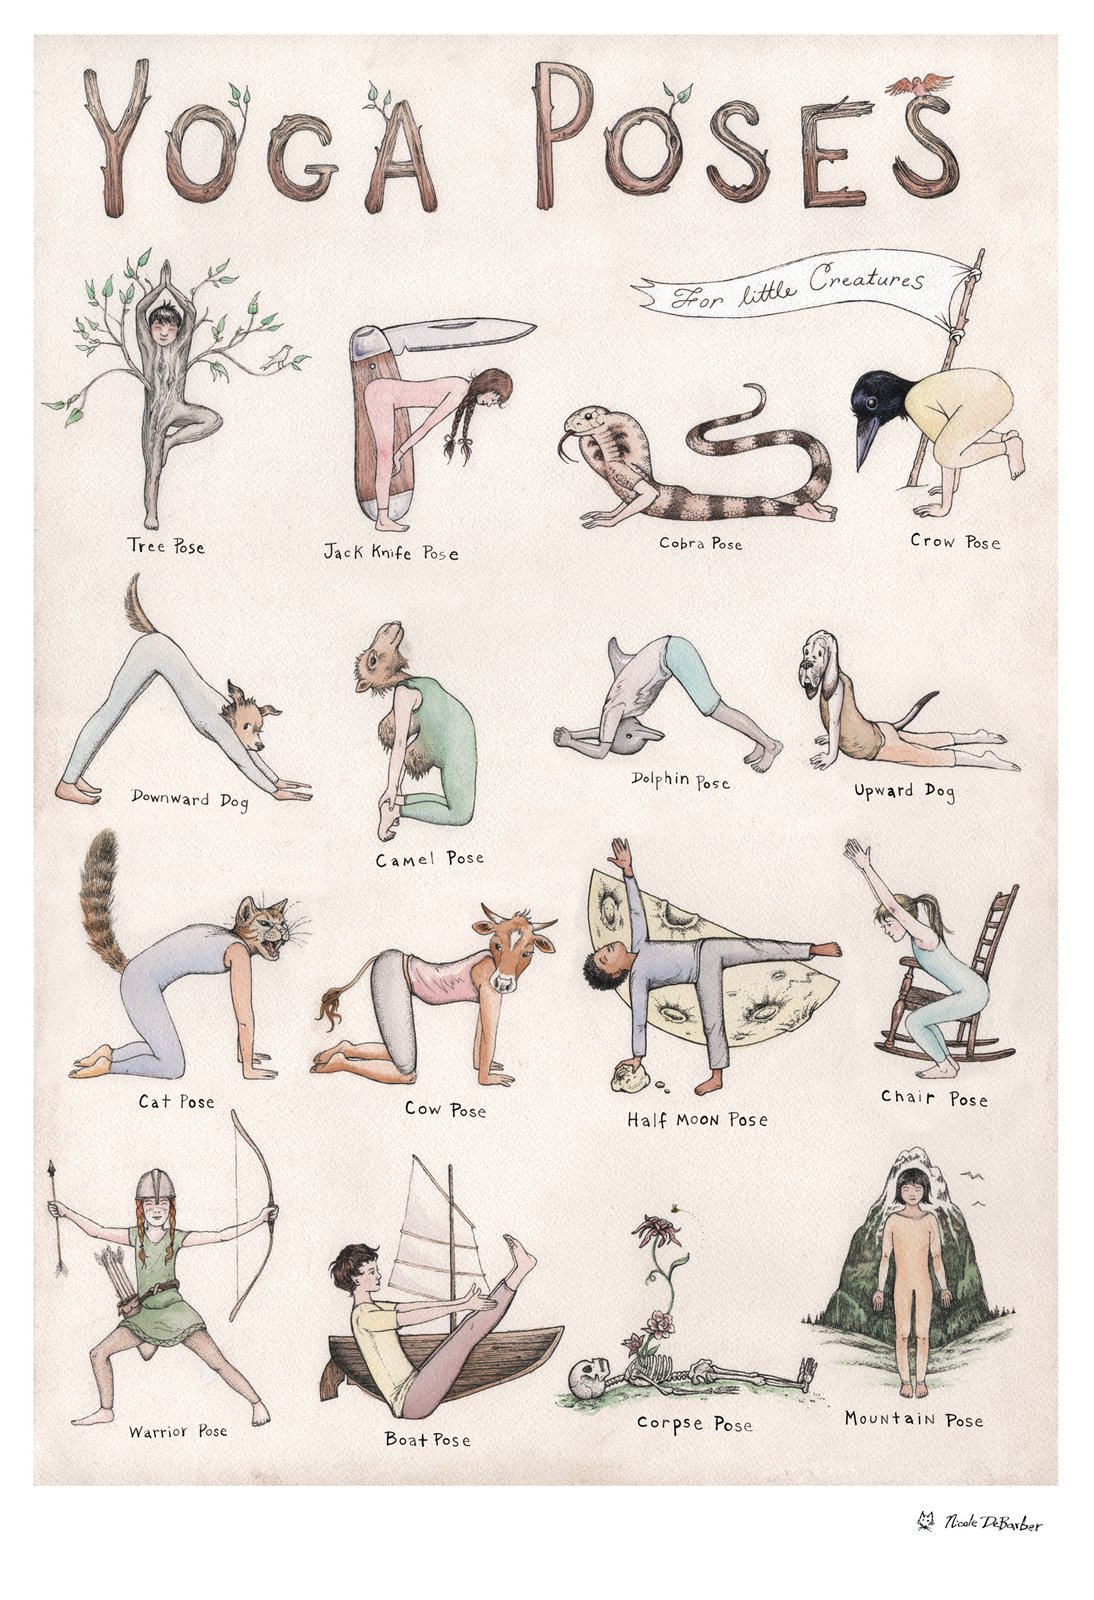 Yoga Poses - Asana List with Images - Yogic Way of Life | Yoga poses, Power yoga  poses, Learn yoga